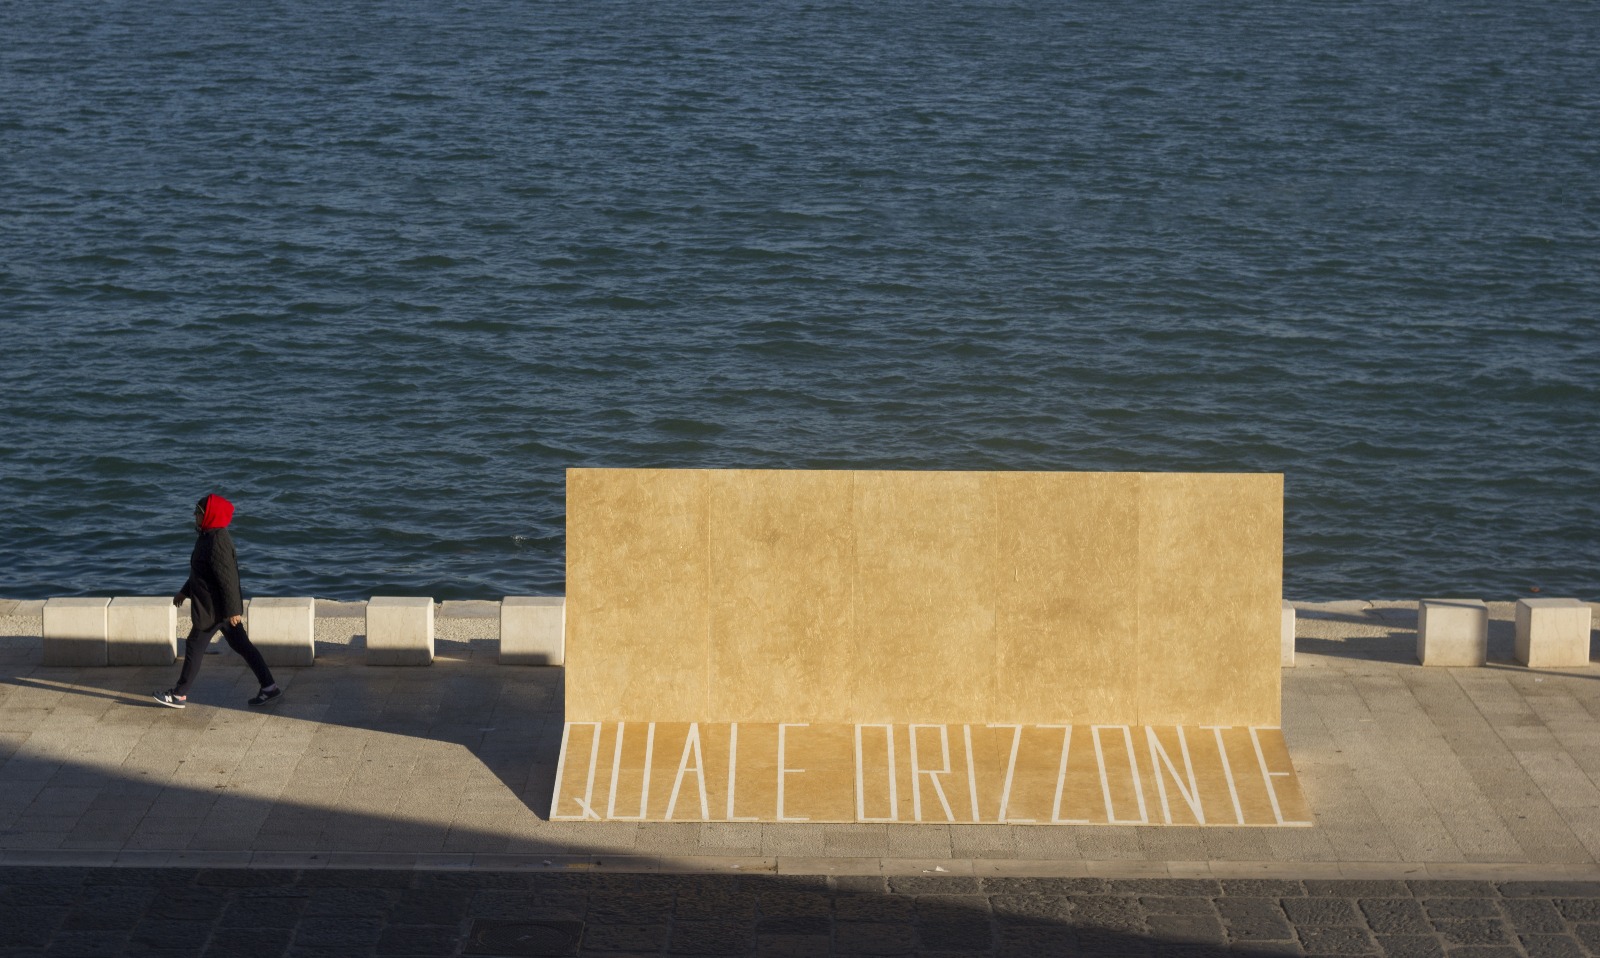 Quale Orizzonte, installazione artistica urbana presso il lungomare di Brindisi